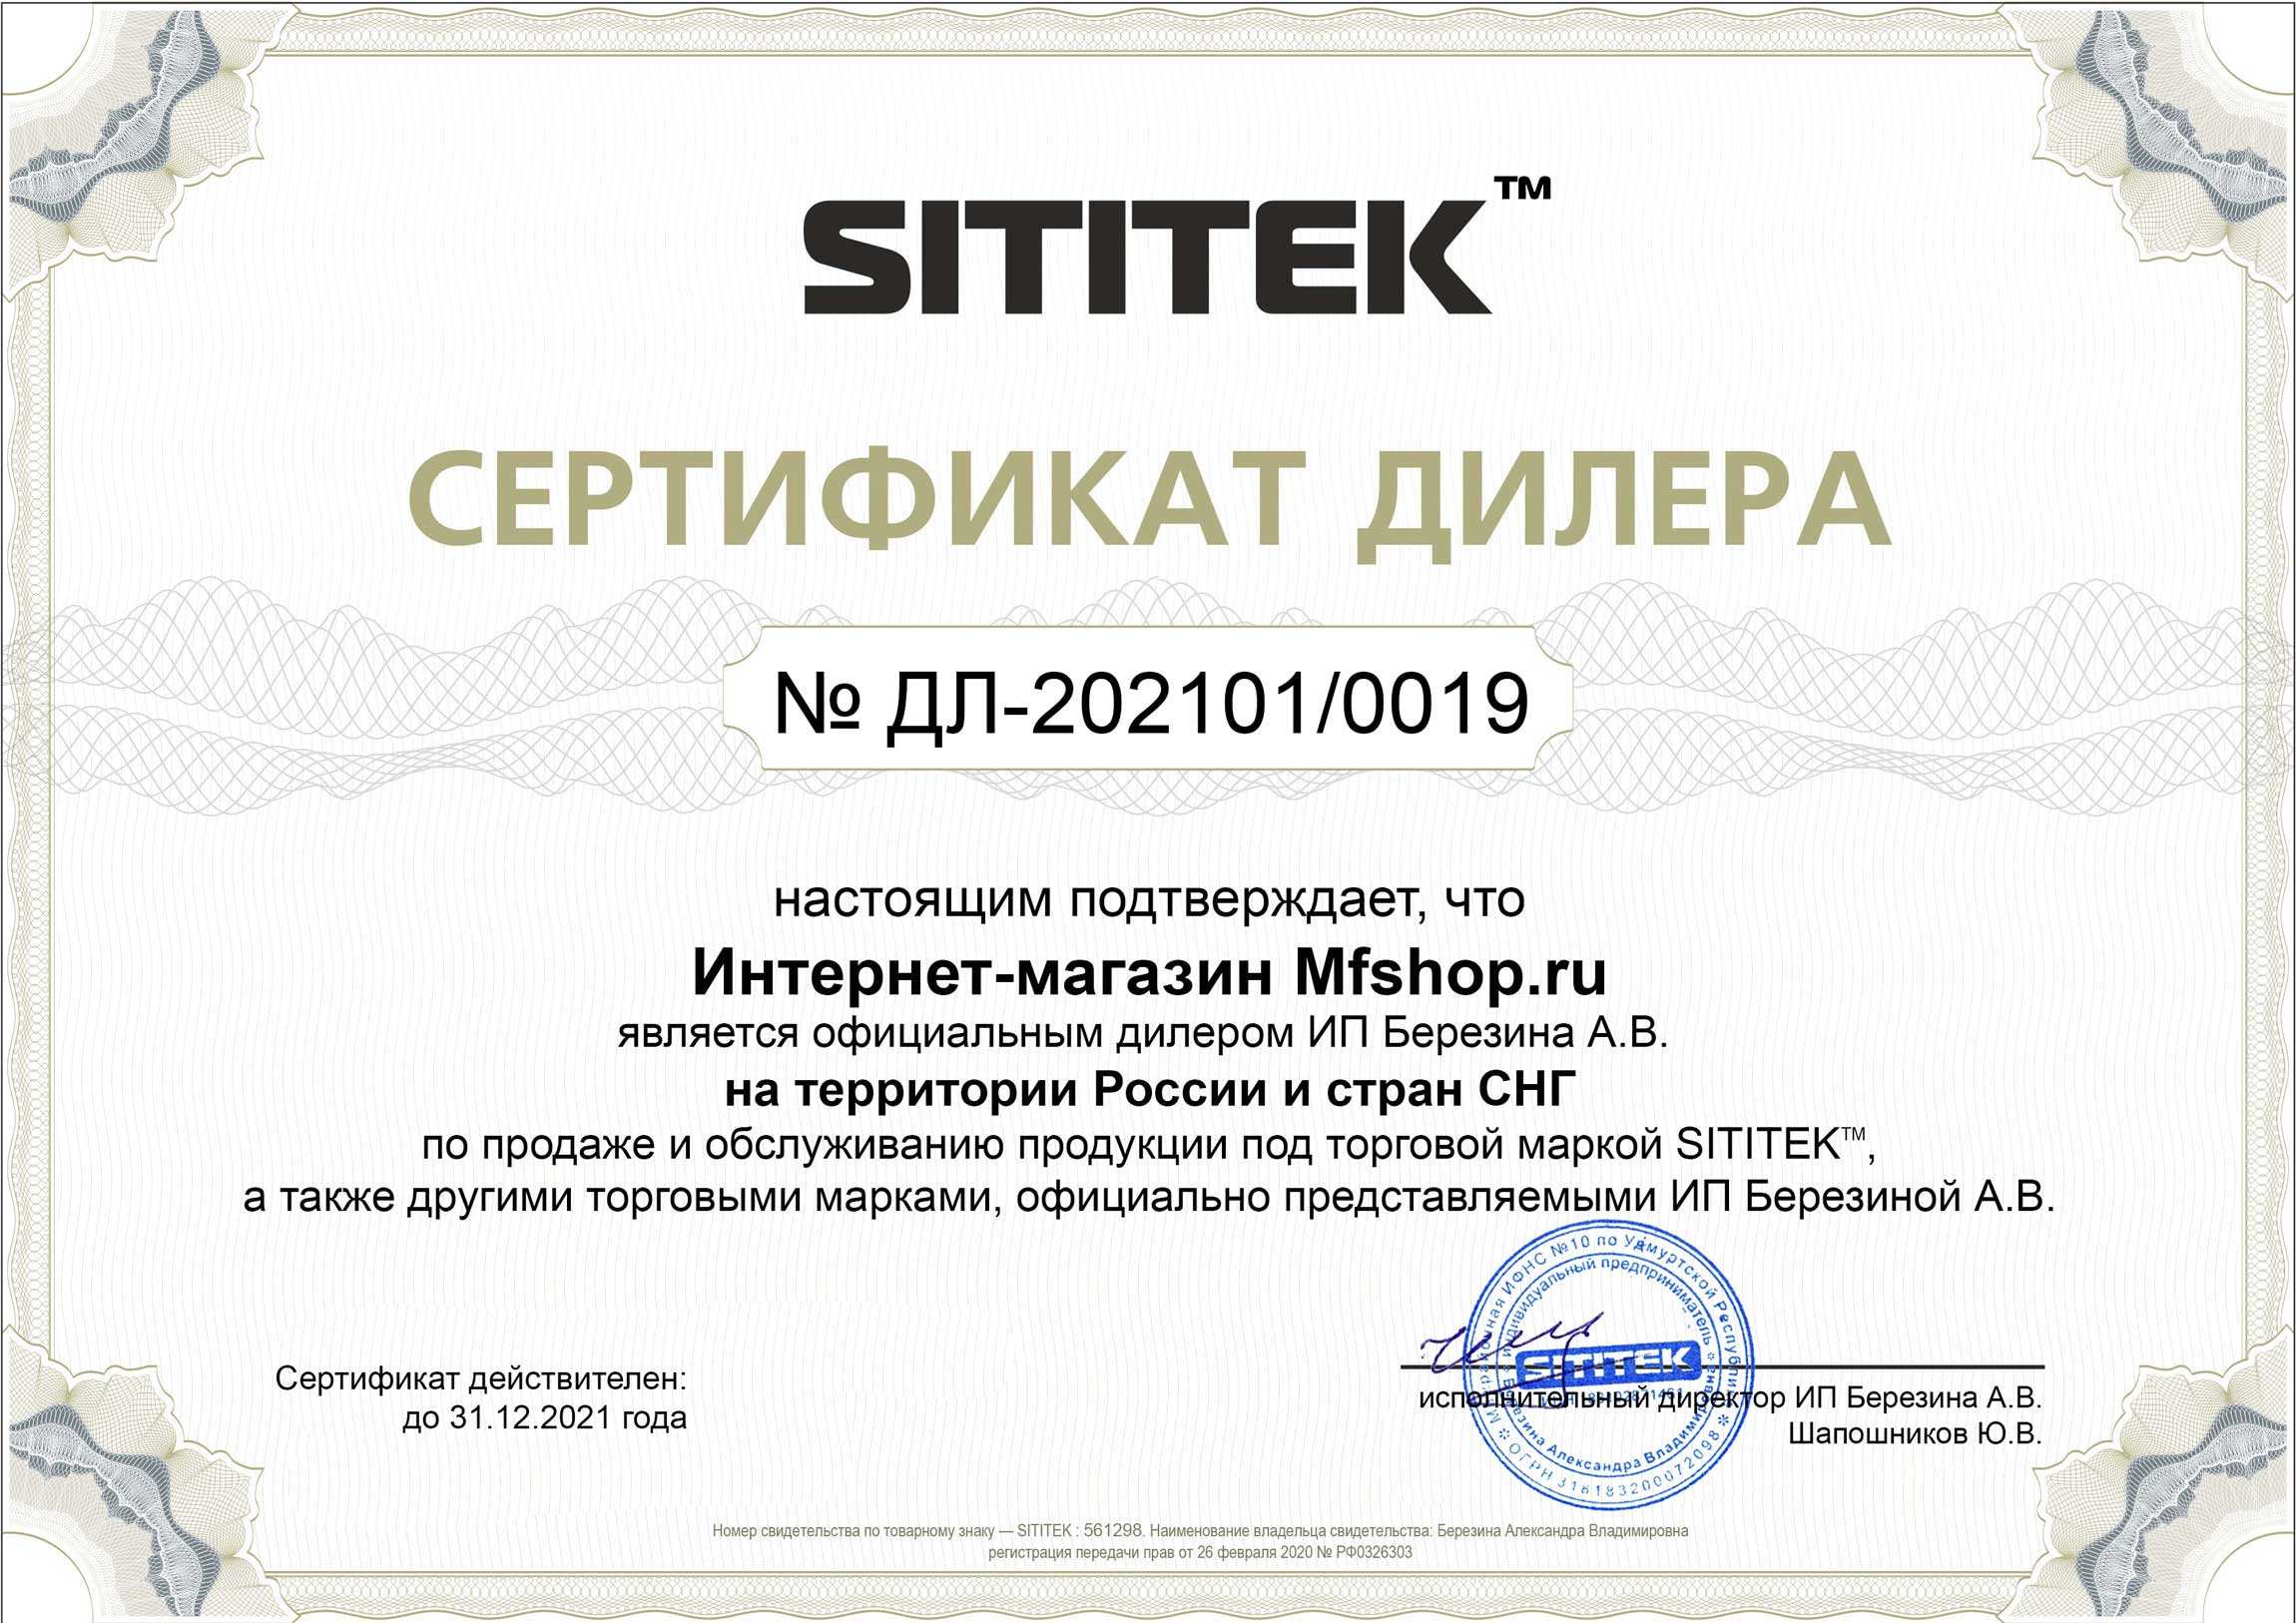 Сертификат дилера на продажу и обслуживание продукции компании Сититек в России и СНГ